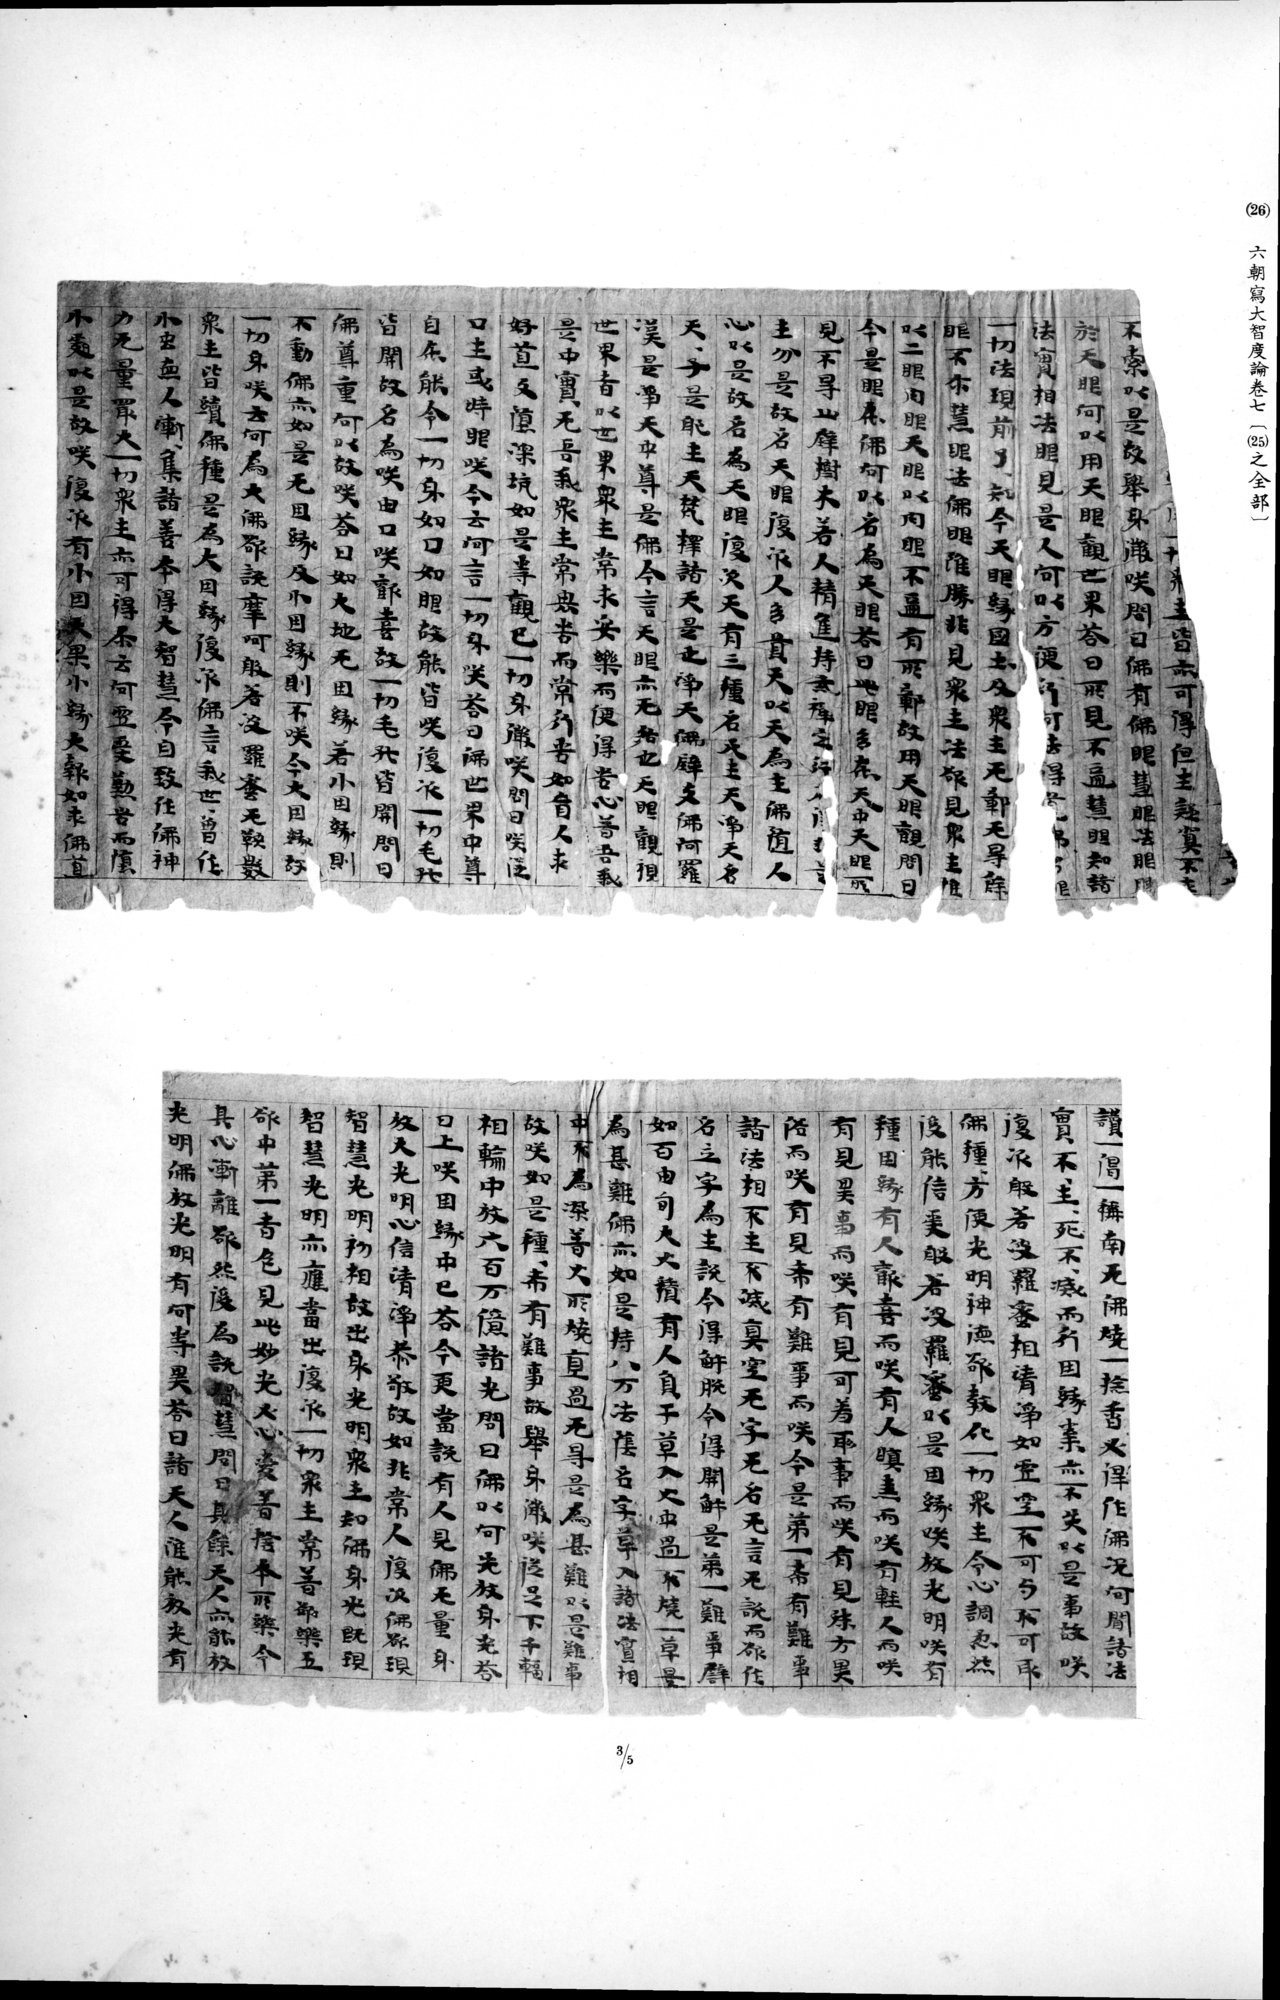 西域考古図譜 : vol.2 / 67 ページ（白黒高解像度画像）